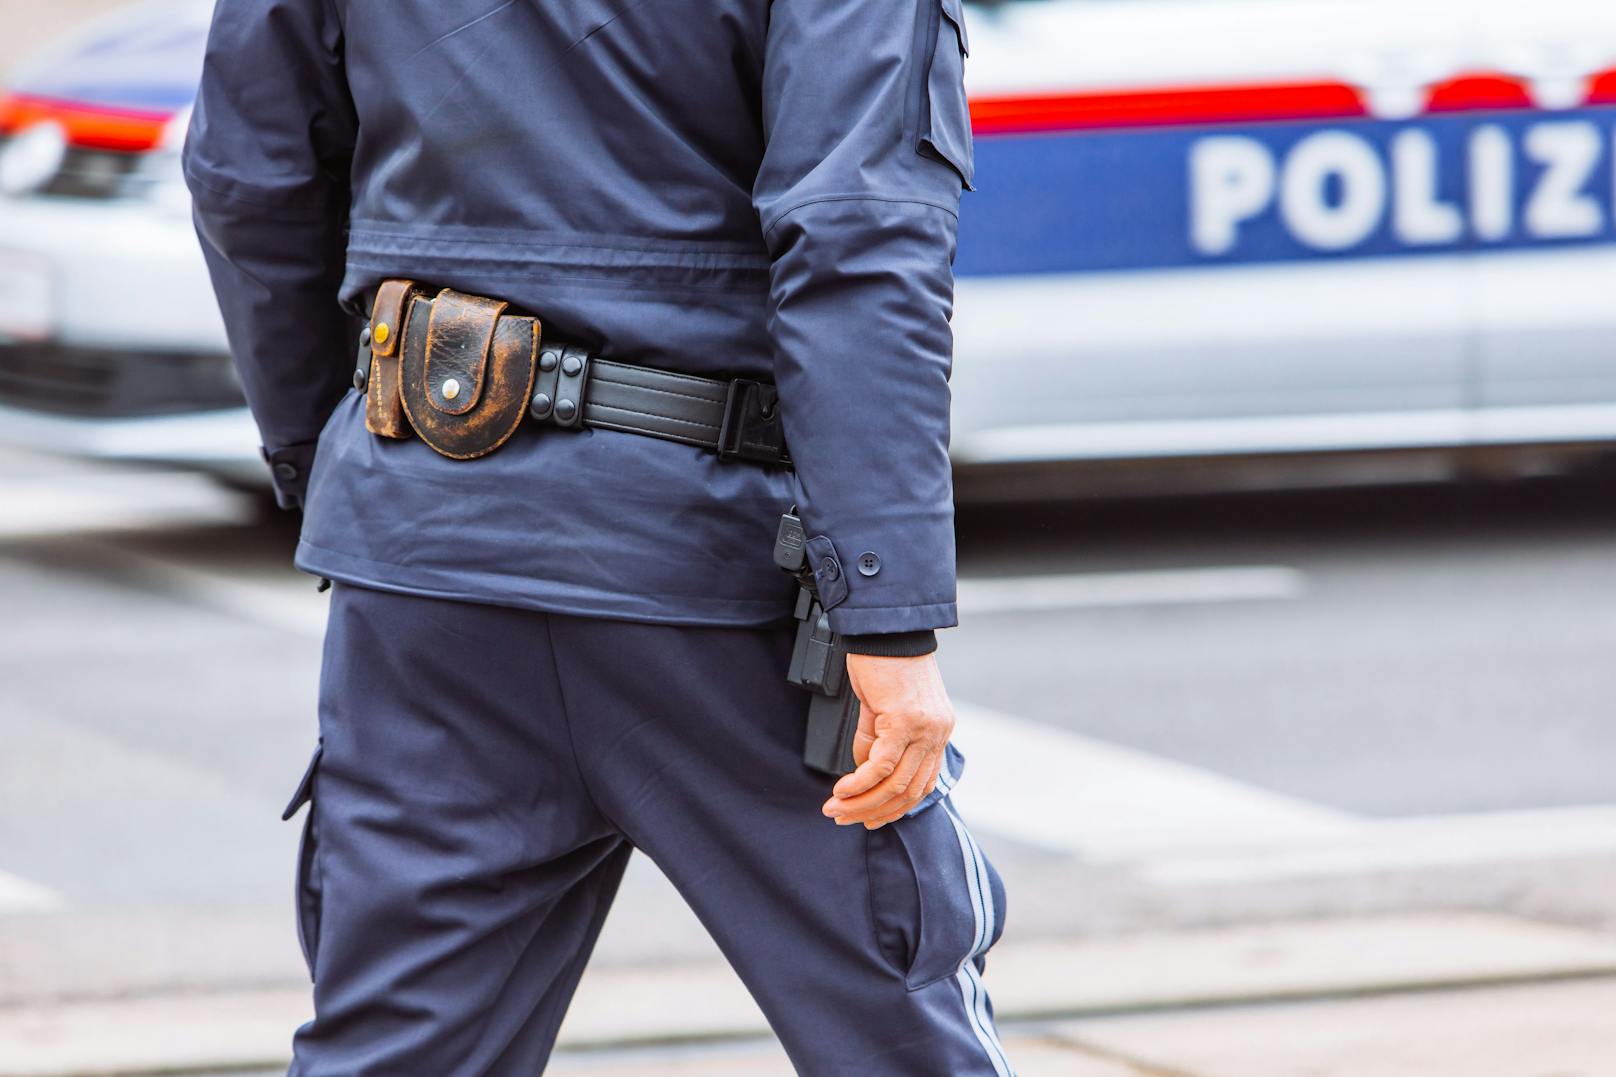 Beamte der Innsbrucker Polizei rückten am Dienstagmorgen aus, um nach dem Täter zu fahnden. (Symbolbild)